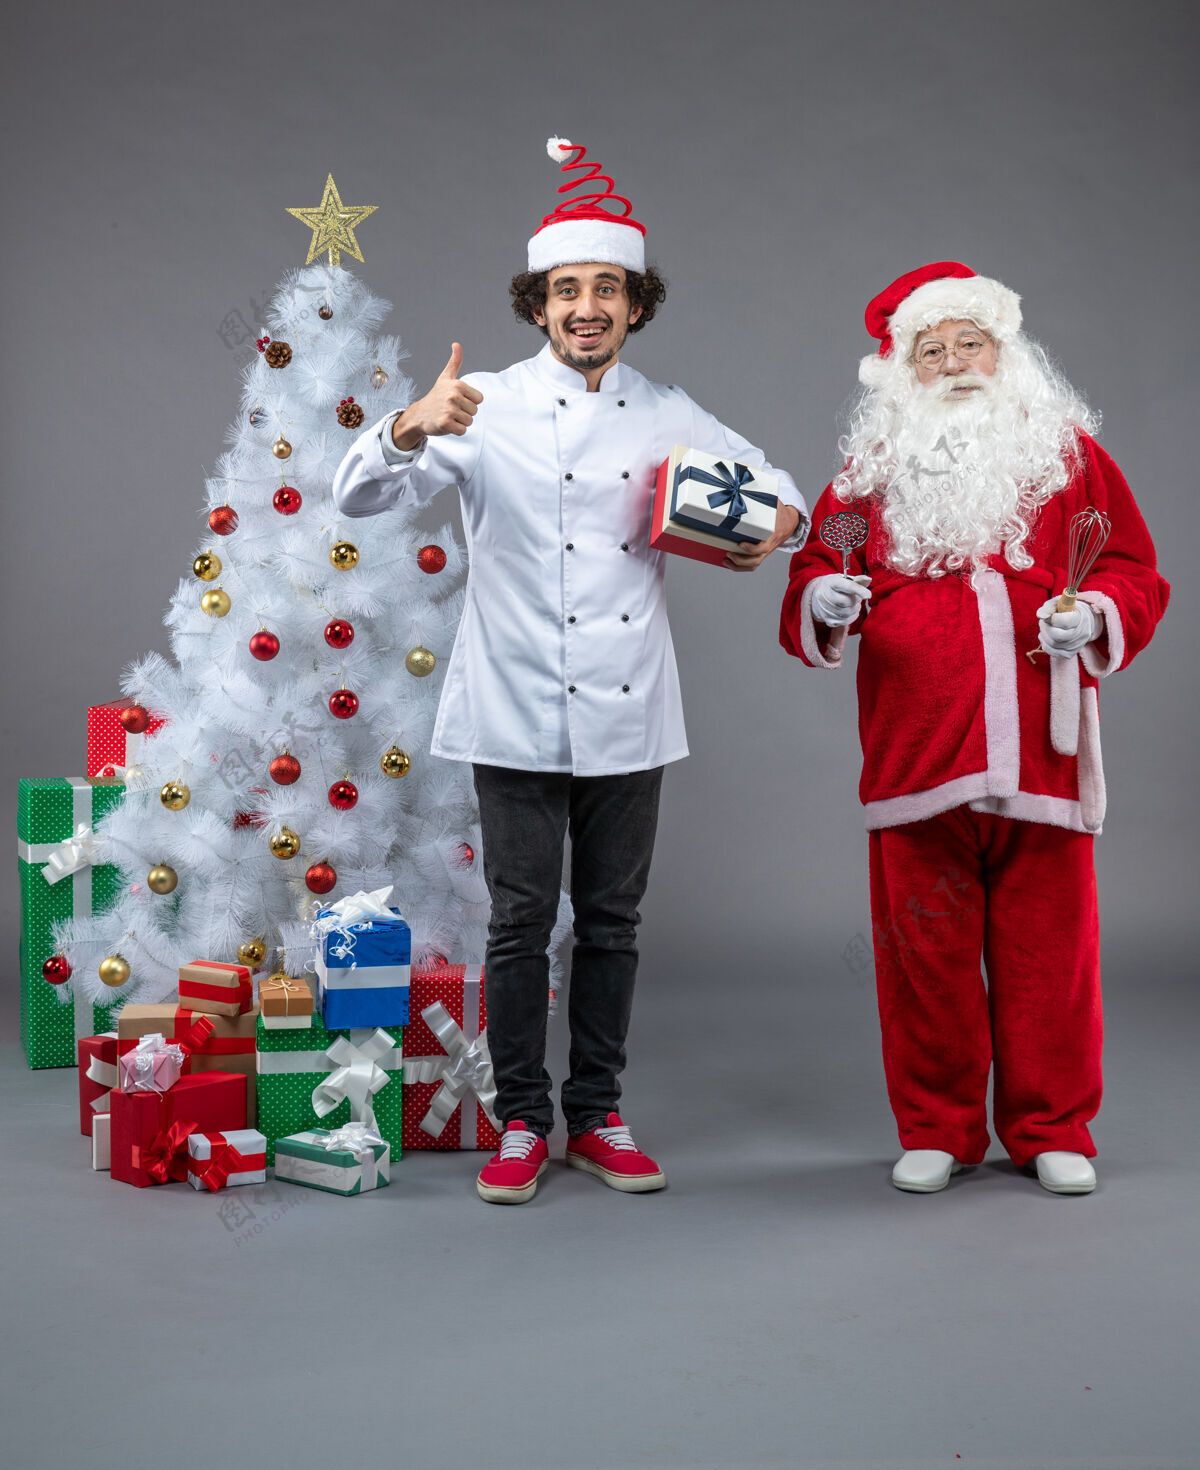 快乐圣诞老人与男性厨师和圣诞礼物在灰色墙壁周围的正面视图厨师圣诞男性